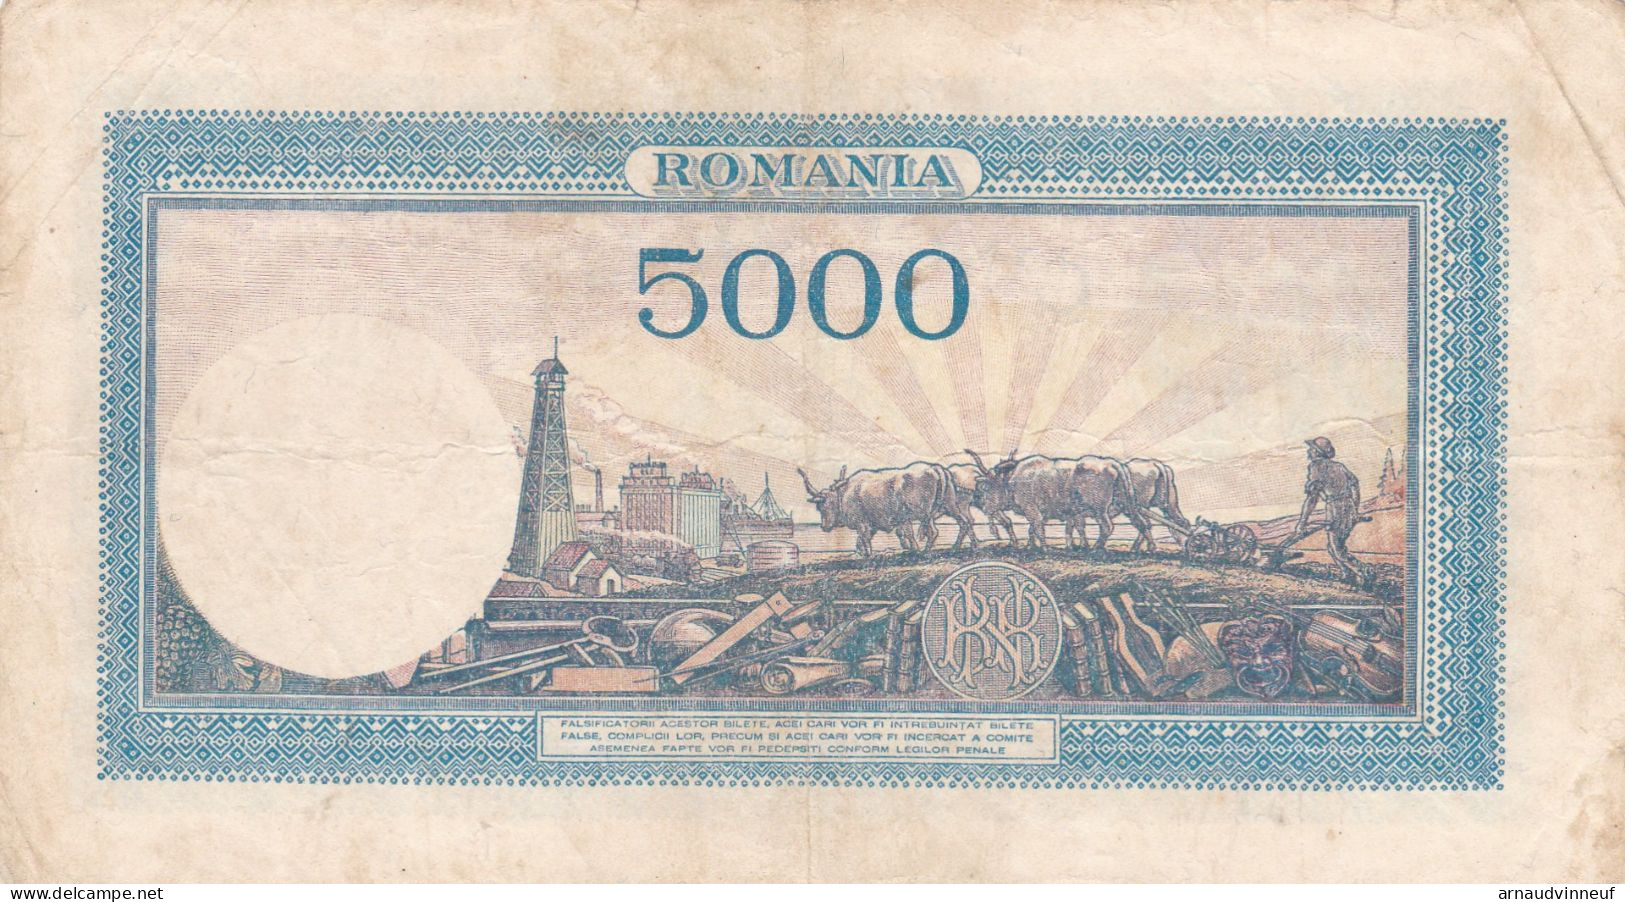 ROMANIA 5000 1944 - Roumanie